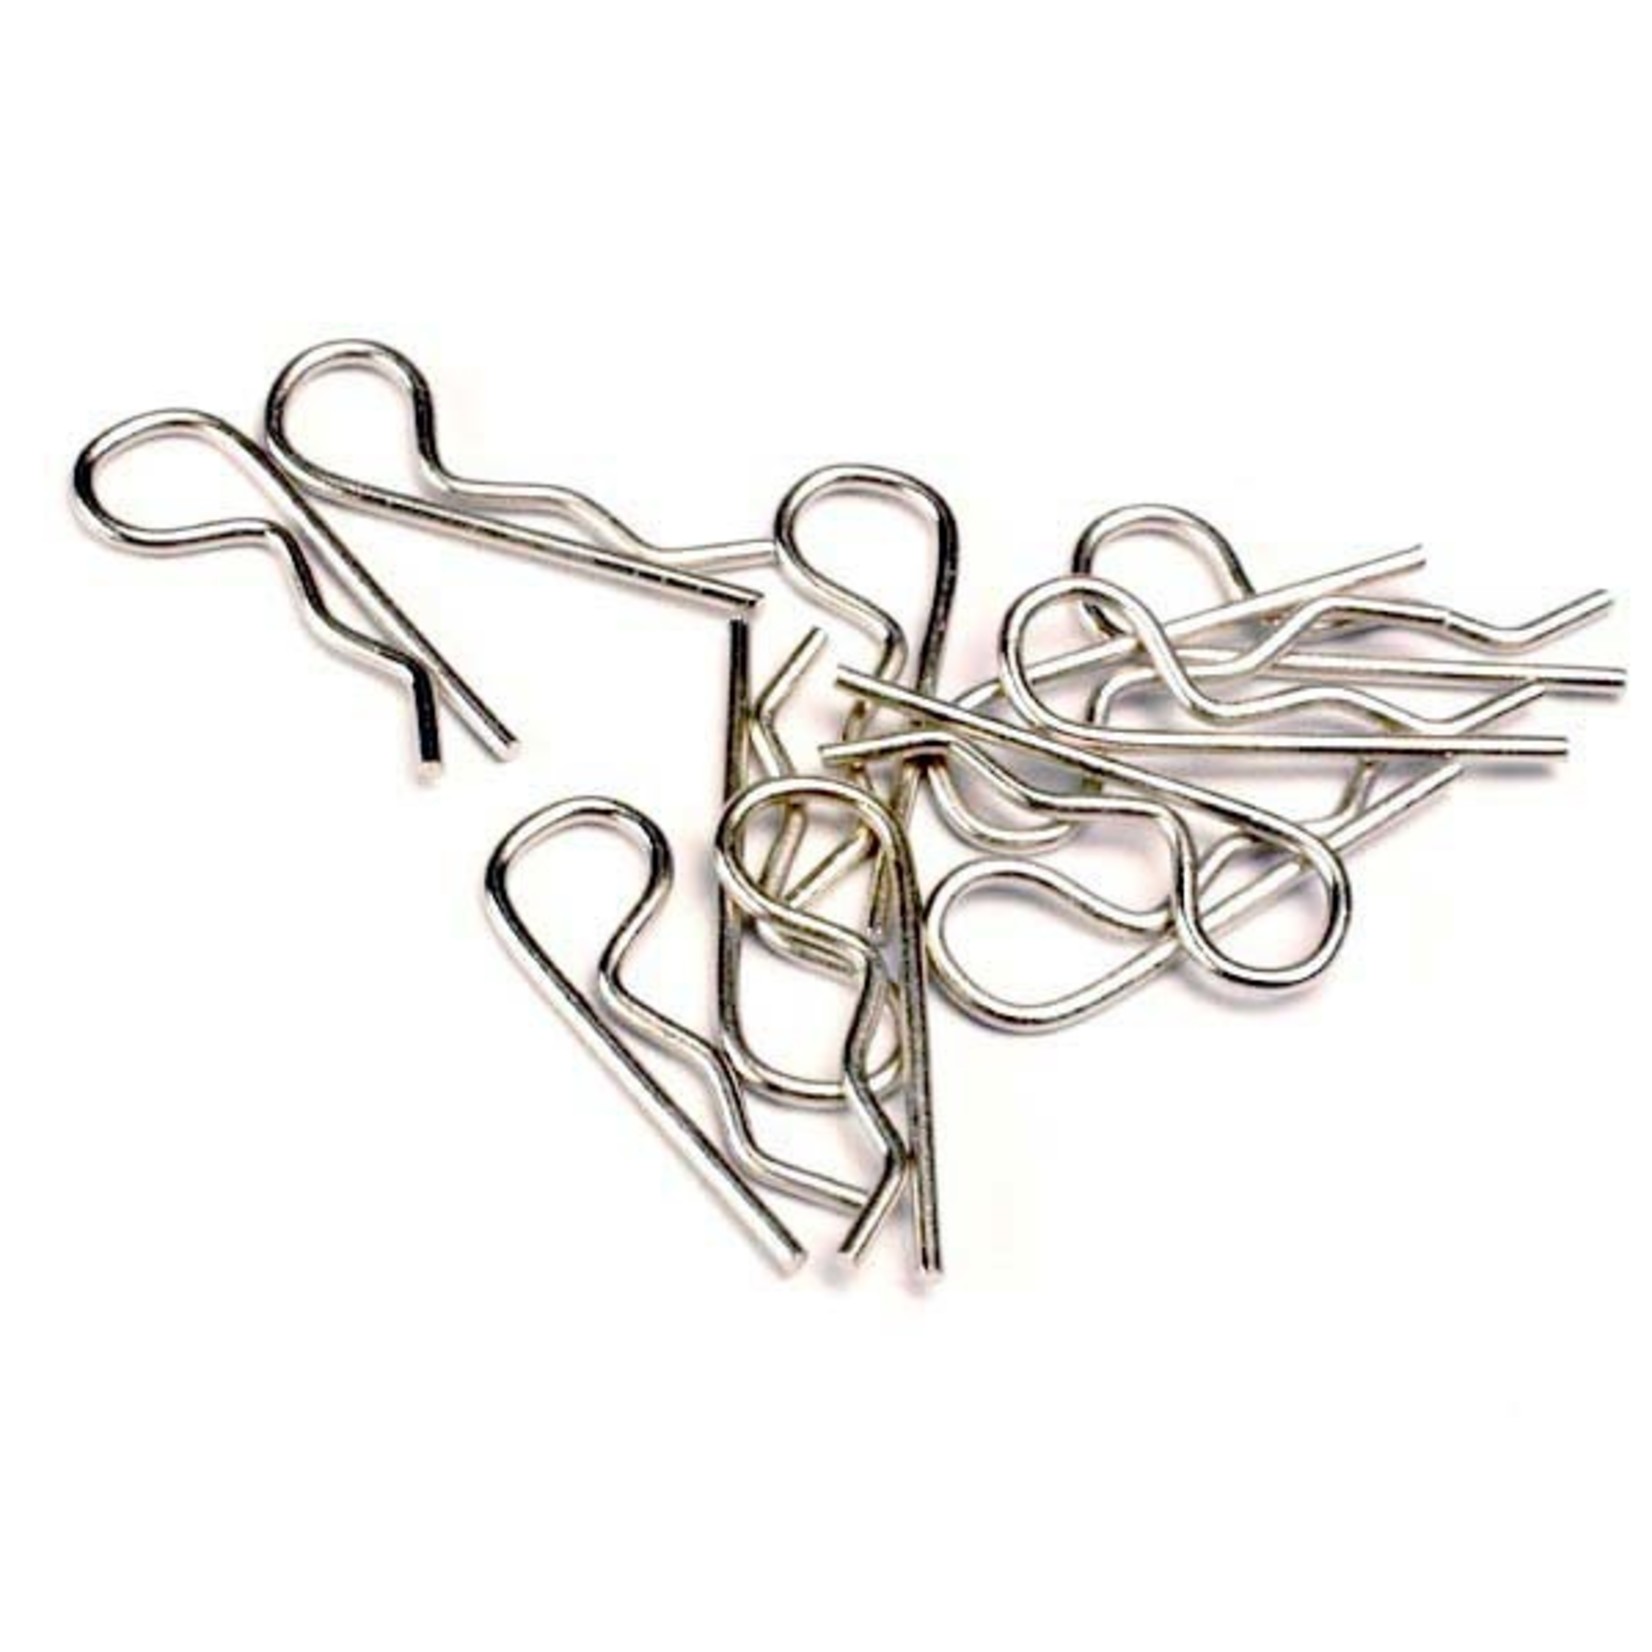 Traxxas 1834 - Body clips (12) (standard size)